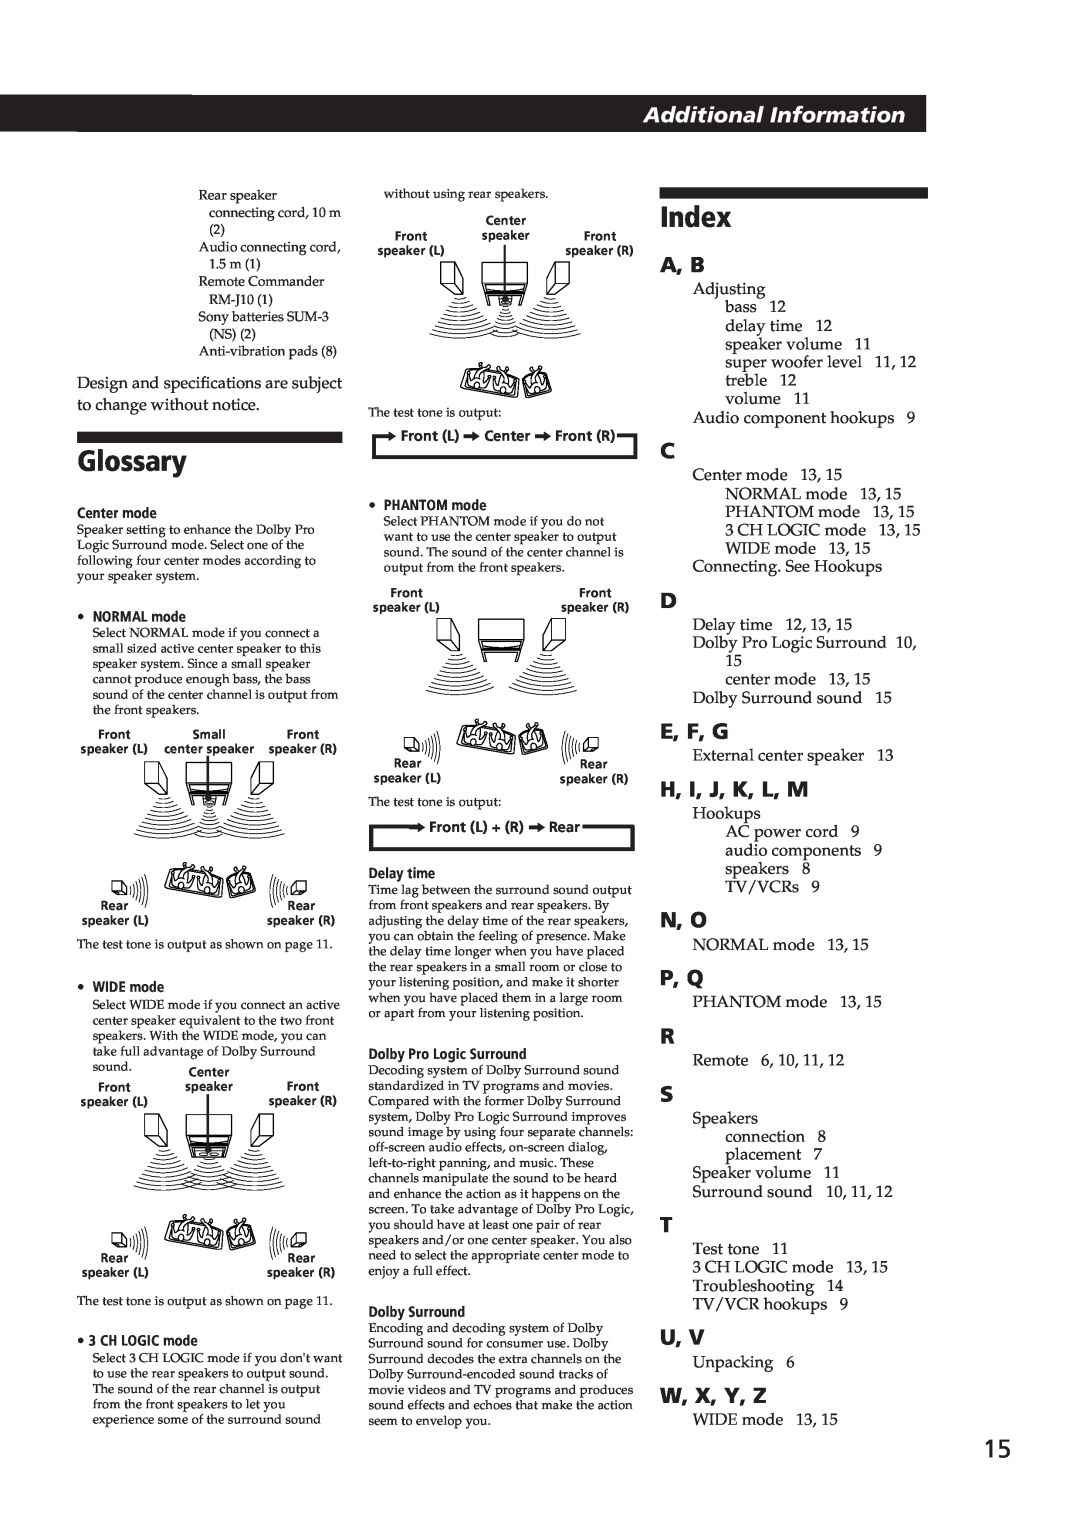 Sony SA-VA10 manual Glossary, Index, A, B, E, F, G, H, I, J, K, L, M, N, O, P, Q, W, X, Y, Z, Additional Information 